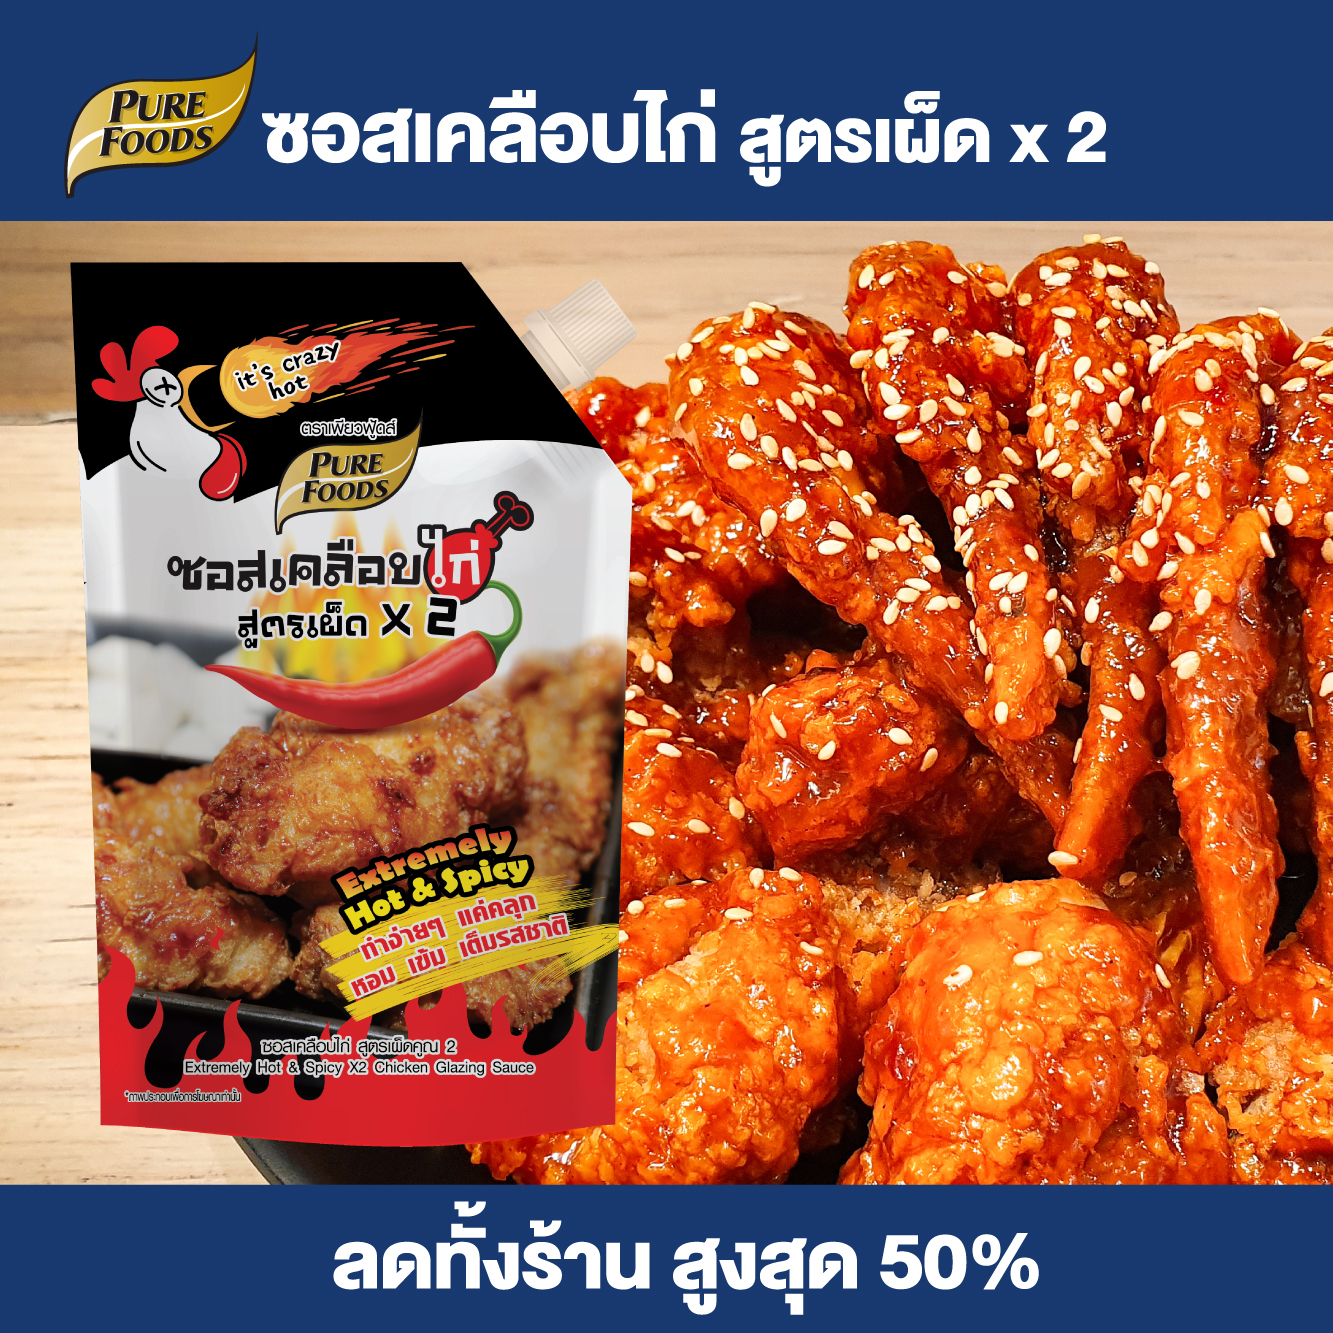 โปรโมชั่น Flash Sale : Purefoods : ซอสเคลือบไก่ สูตรเผ็ดx2 ( Extremely Hot & Spicy X2 Chicken Glazing Sauce) ซอสไก่เผ็ด ซอสไก่เกาหลี ซอสไก่บอนชอน ซอสทาไก่ ขนาด 1000 กรัม พร้อมส่ง